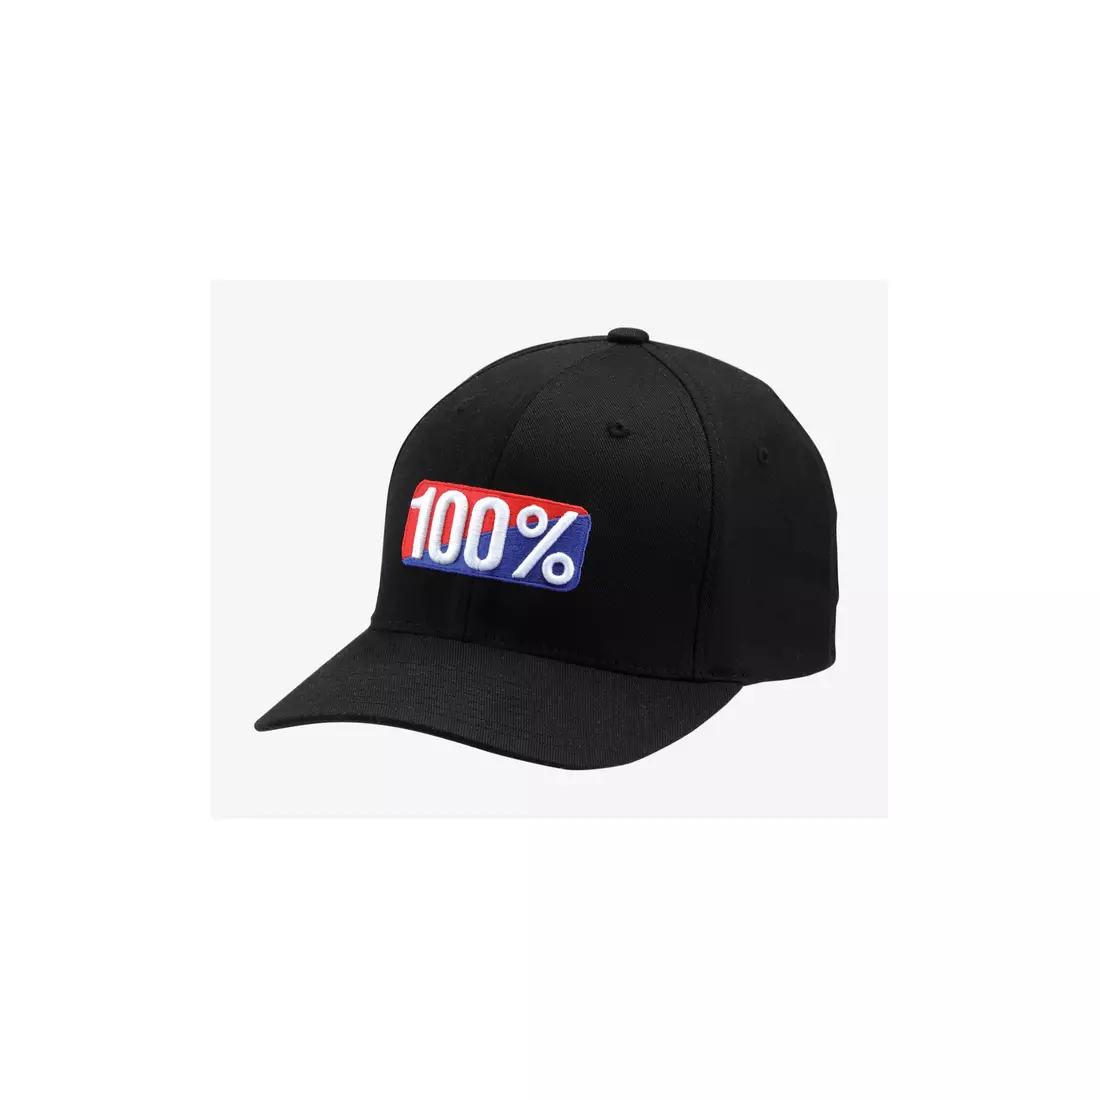 100% baseballová čepice CLASSIC X-Fit flexfit hat black STO-20011-001-18